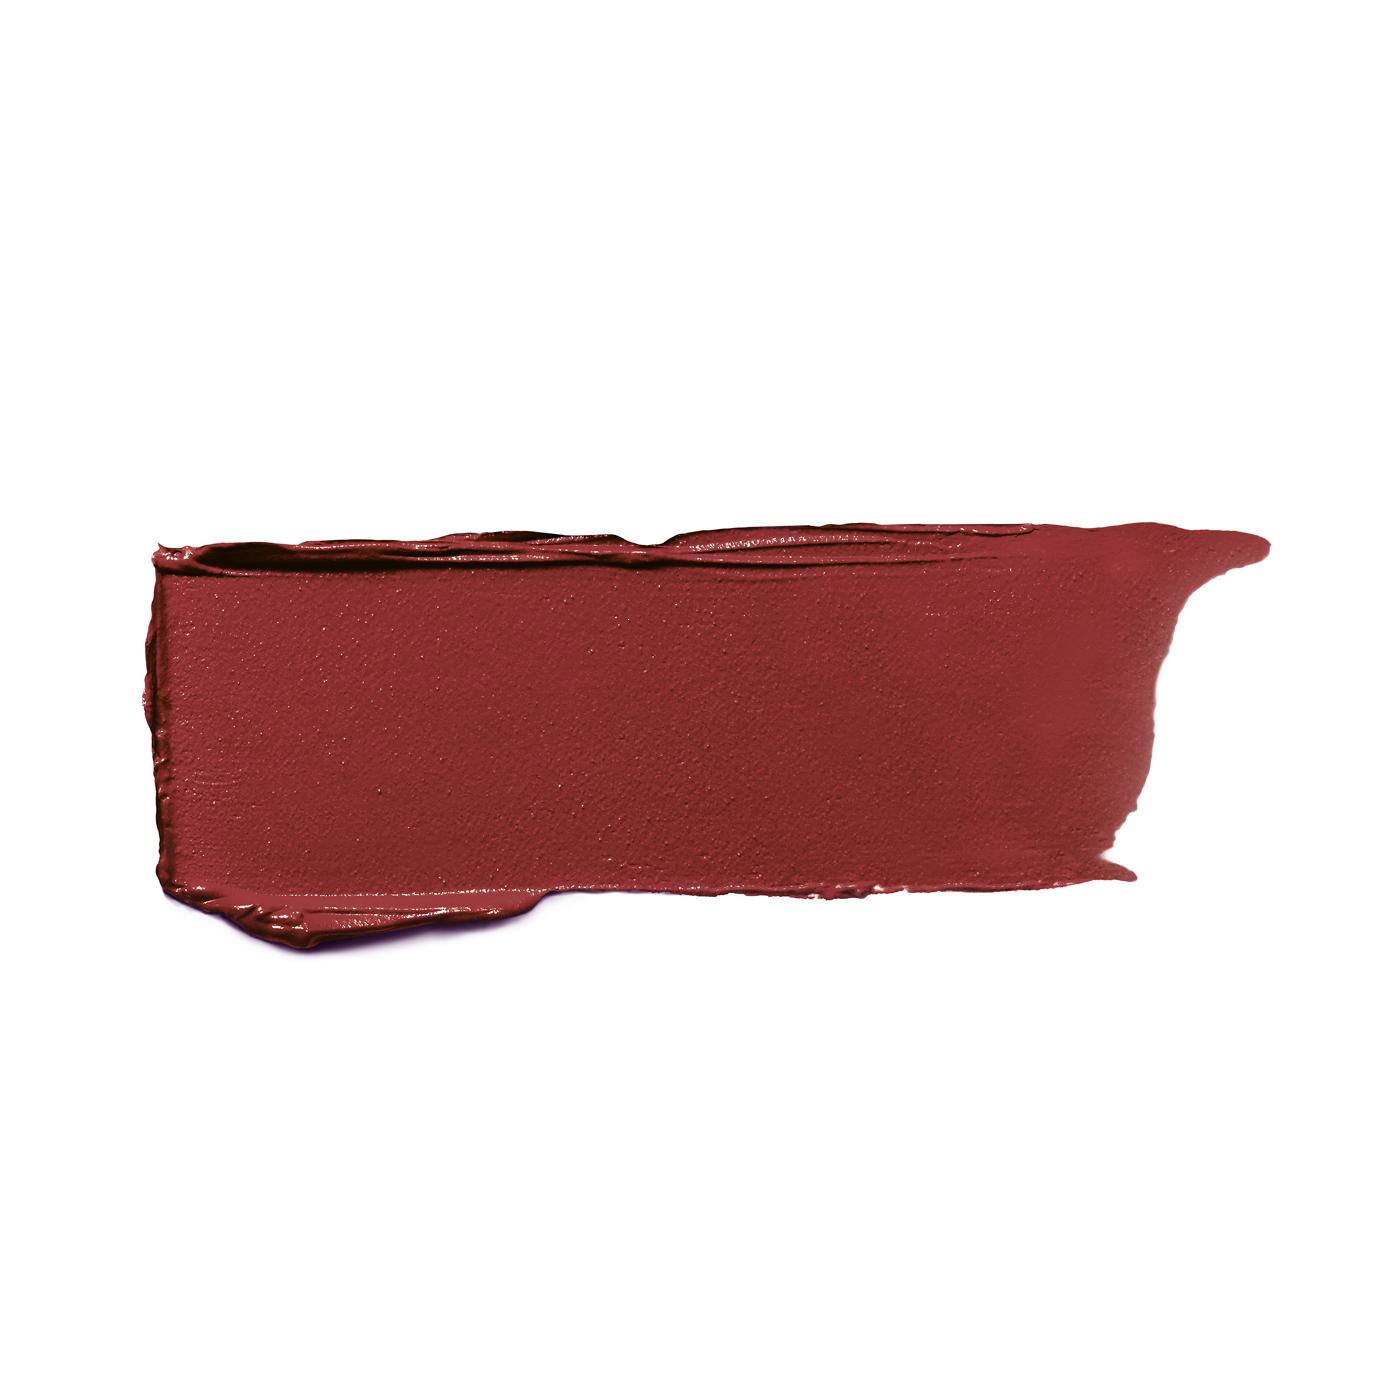 L'Oréal Paris Colour Riche Original Satin Lipstick for Moisturized Lips Ginger Spice; image 2 of 2